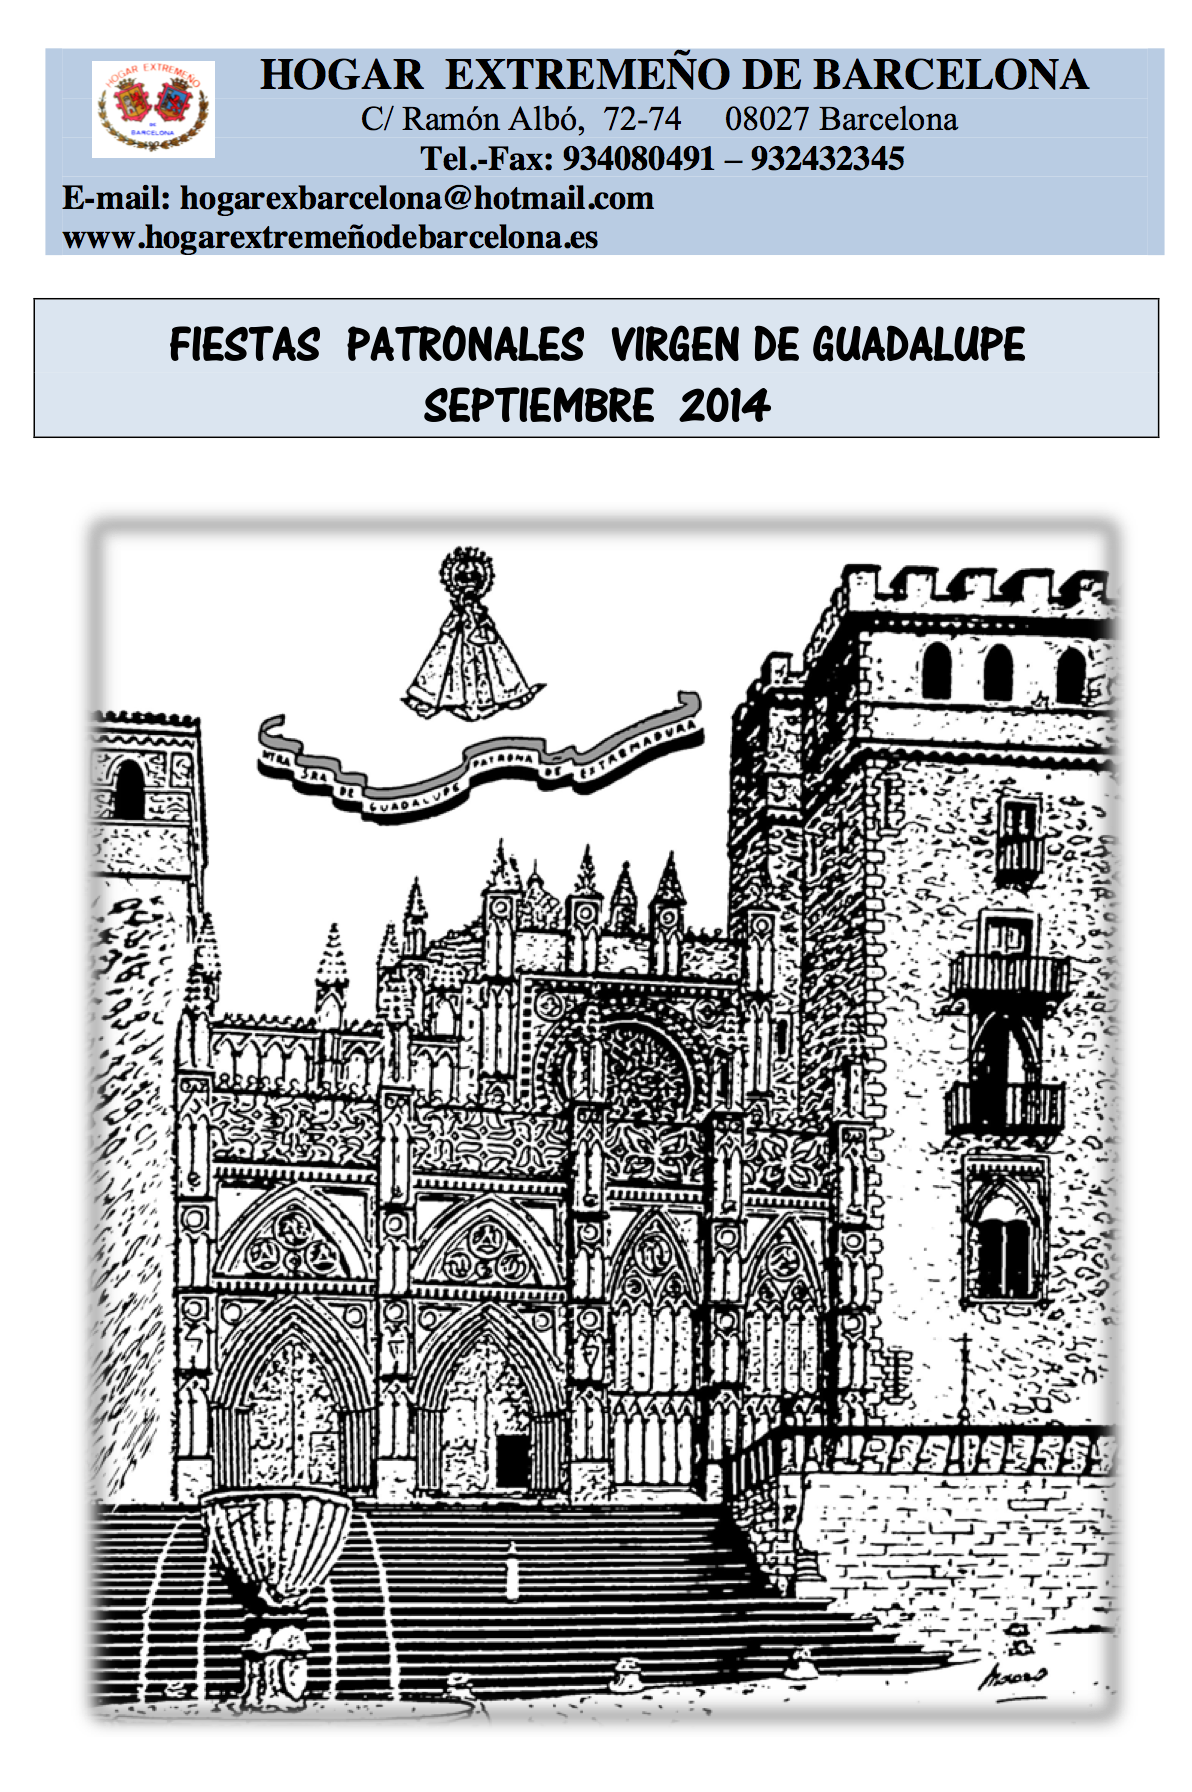 Fiestas patronales virgen de guadalupe 2014 en el hogar extremeno de barcelona